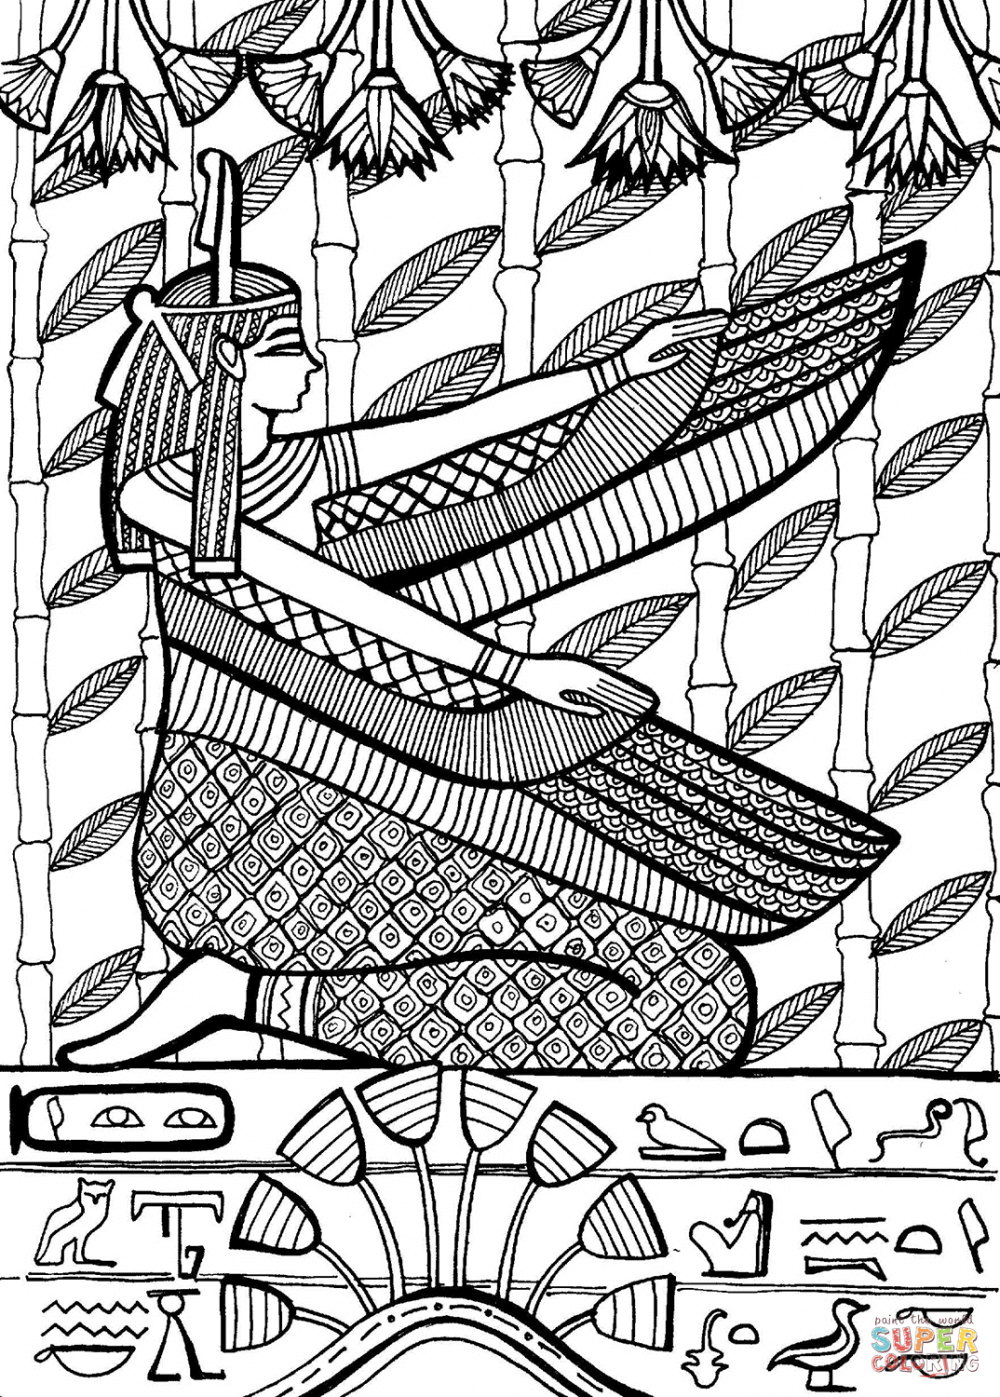 Боги Египта раскраска раскрашиная